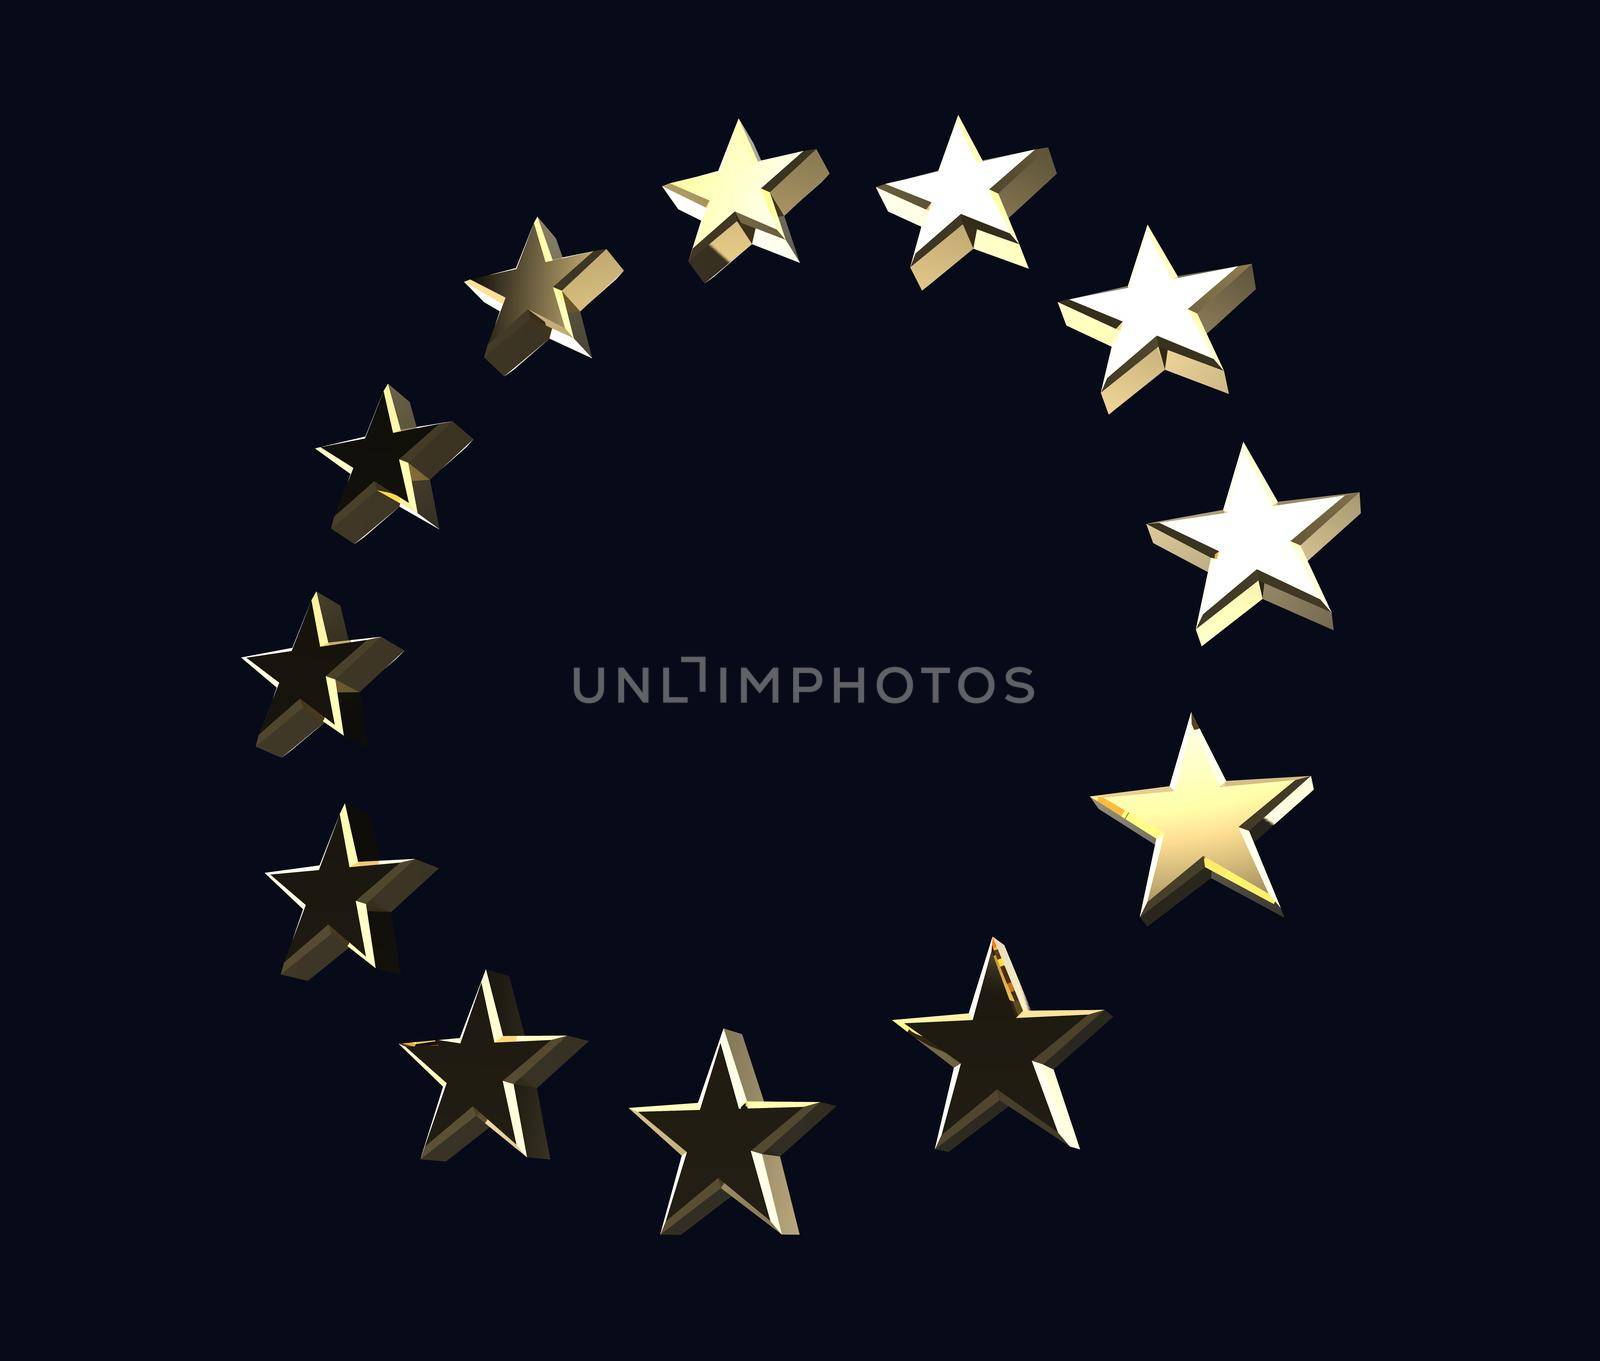 3D European Union logo stars on dark background by clusterx